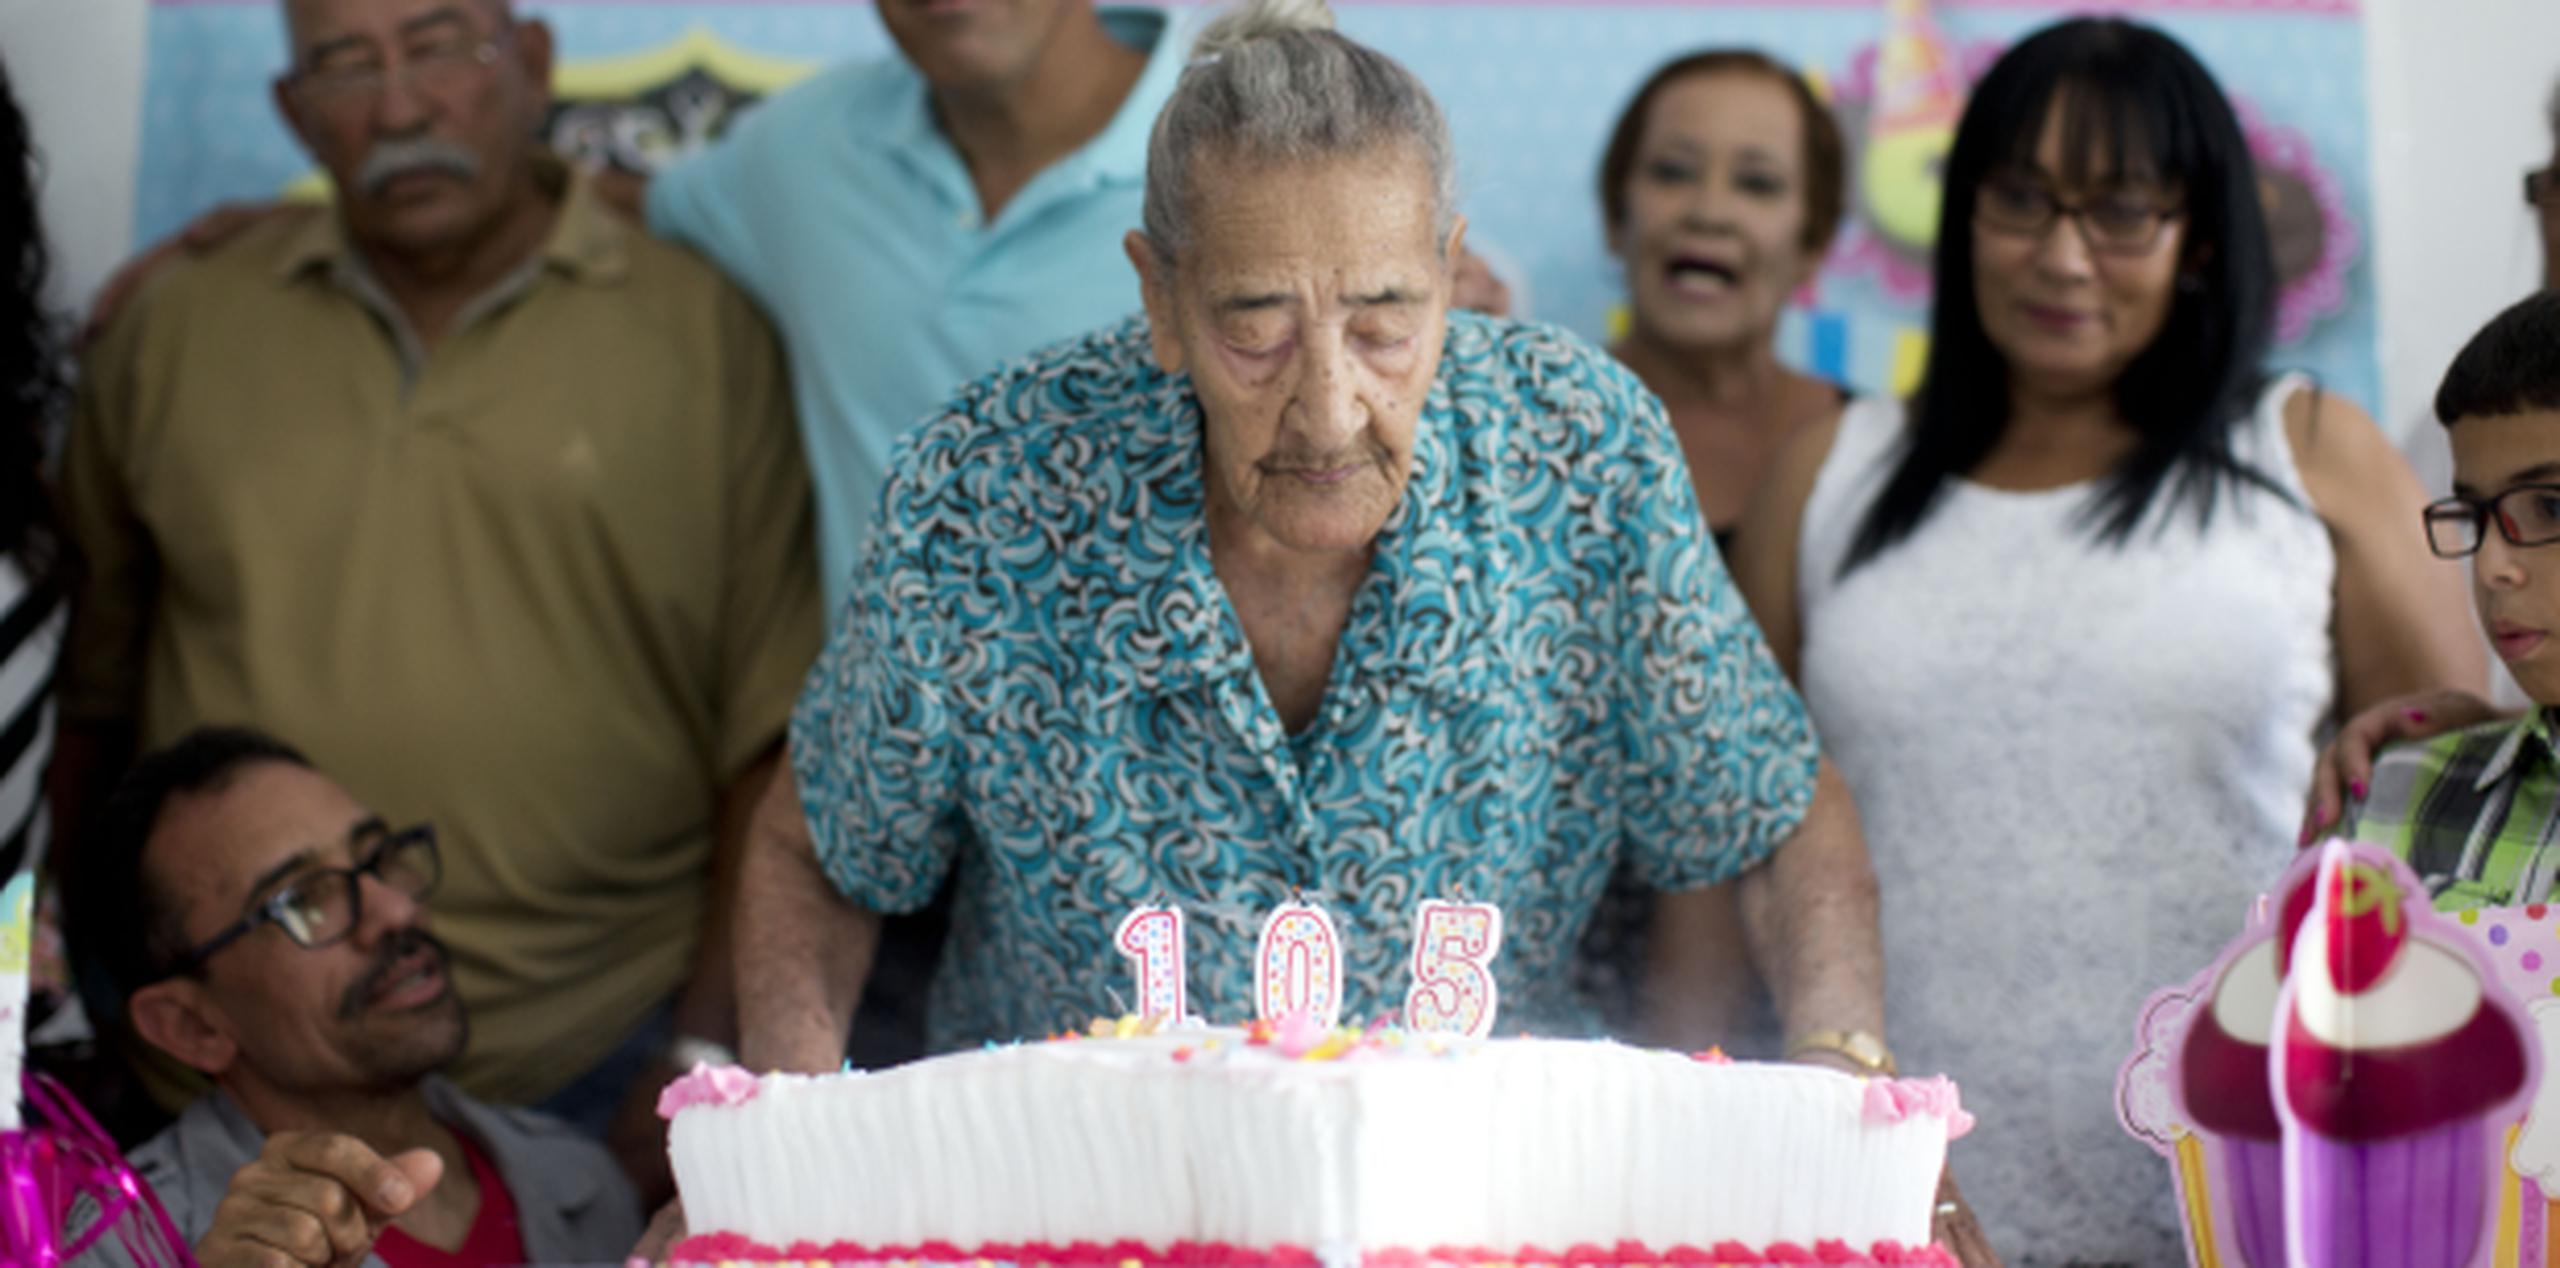 Doña Celestina Rivera Vega, quien ayer celebró junto a amigos y familiares 105 años de vida y felicidad … “porque sí mi'ja, he sido muy feliz”. (tonito.zayas@gfrmedia.com)